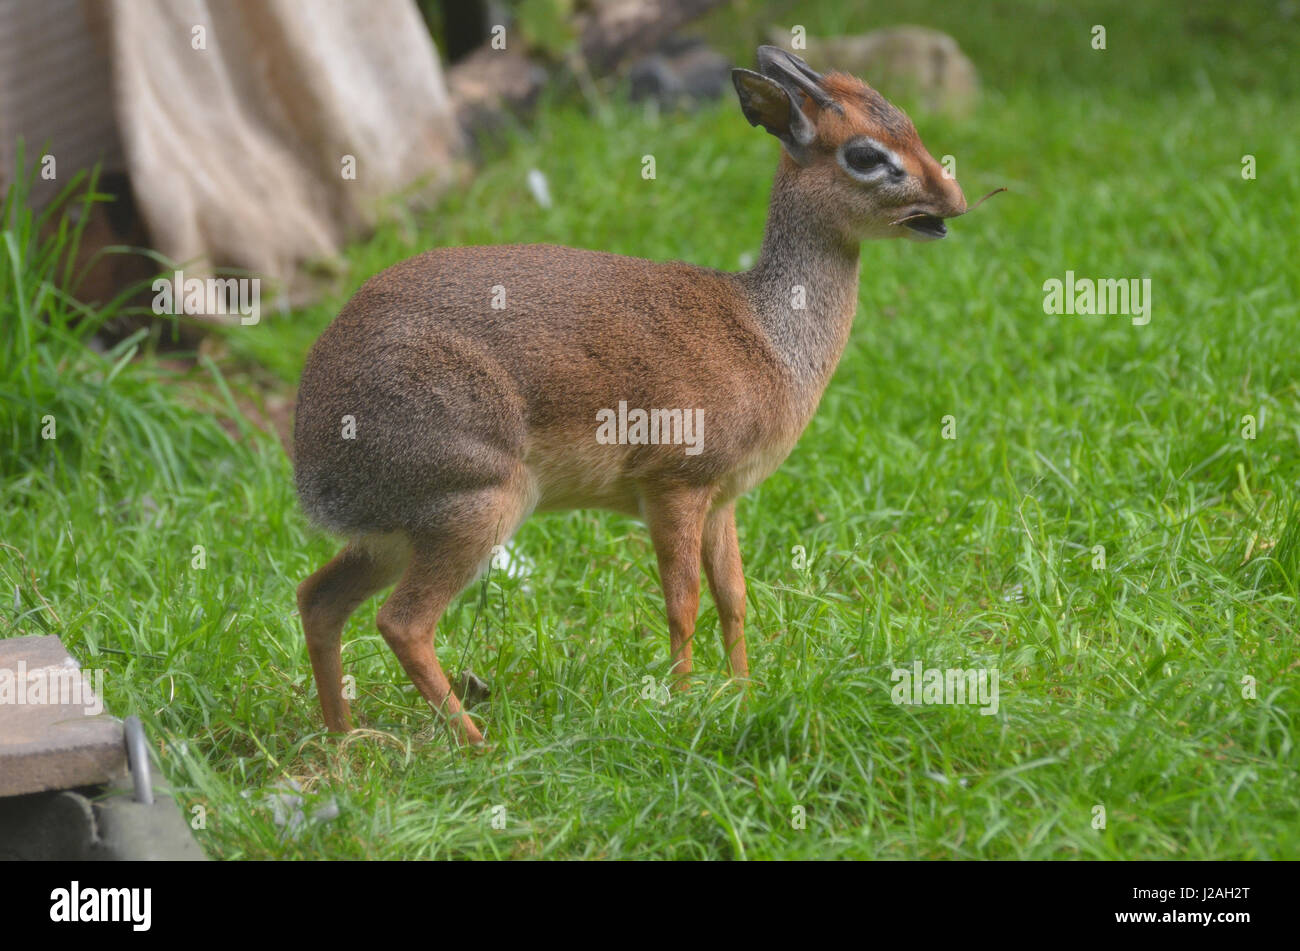 Niedliche kleine Antilope bezeichnet ein Dik-Dik mit einem kleinen Zweig in den offenen Mund. Stockfoto